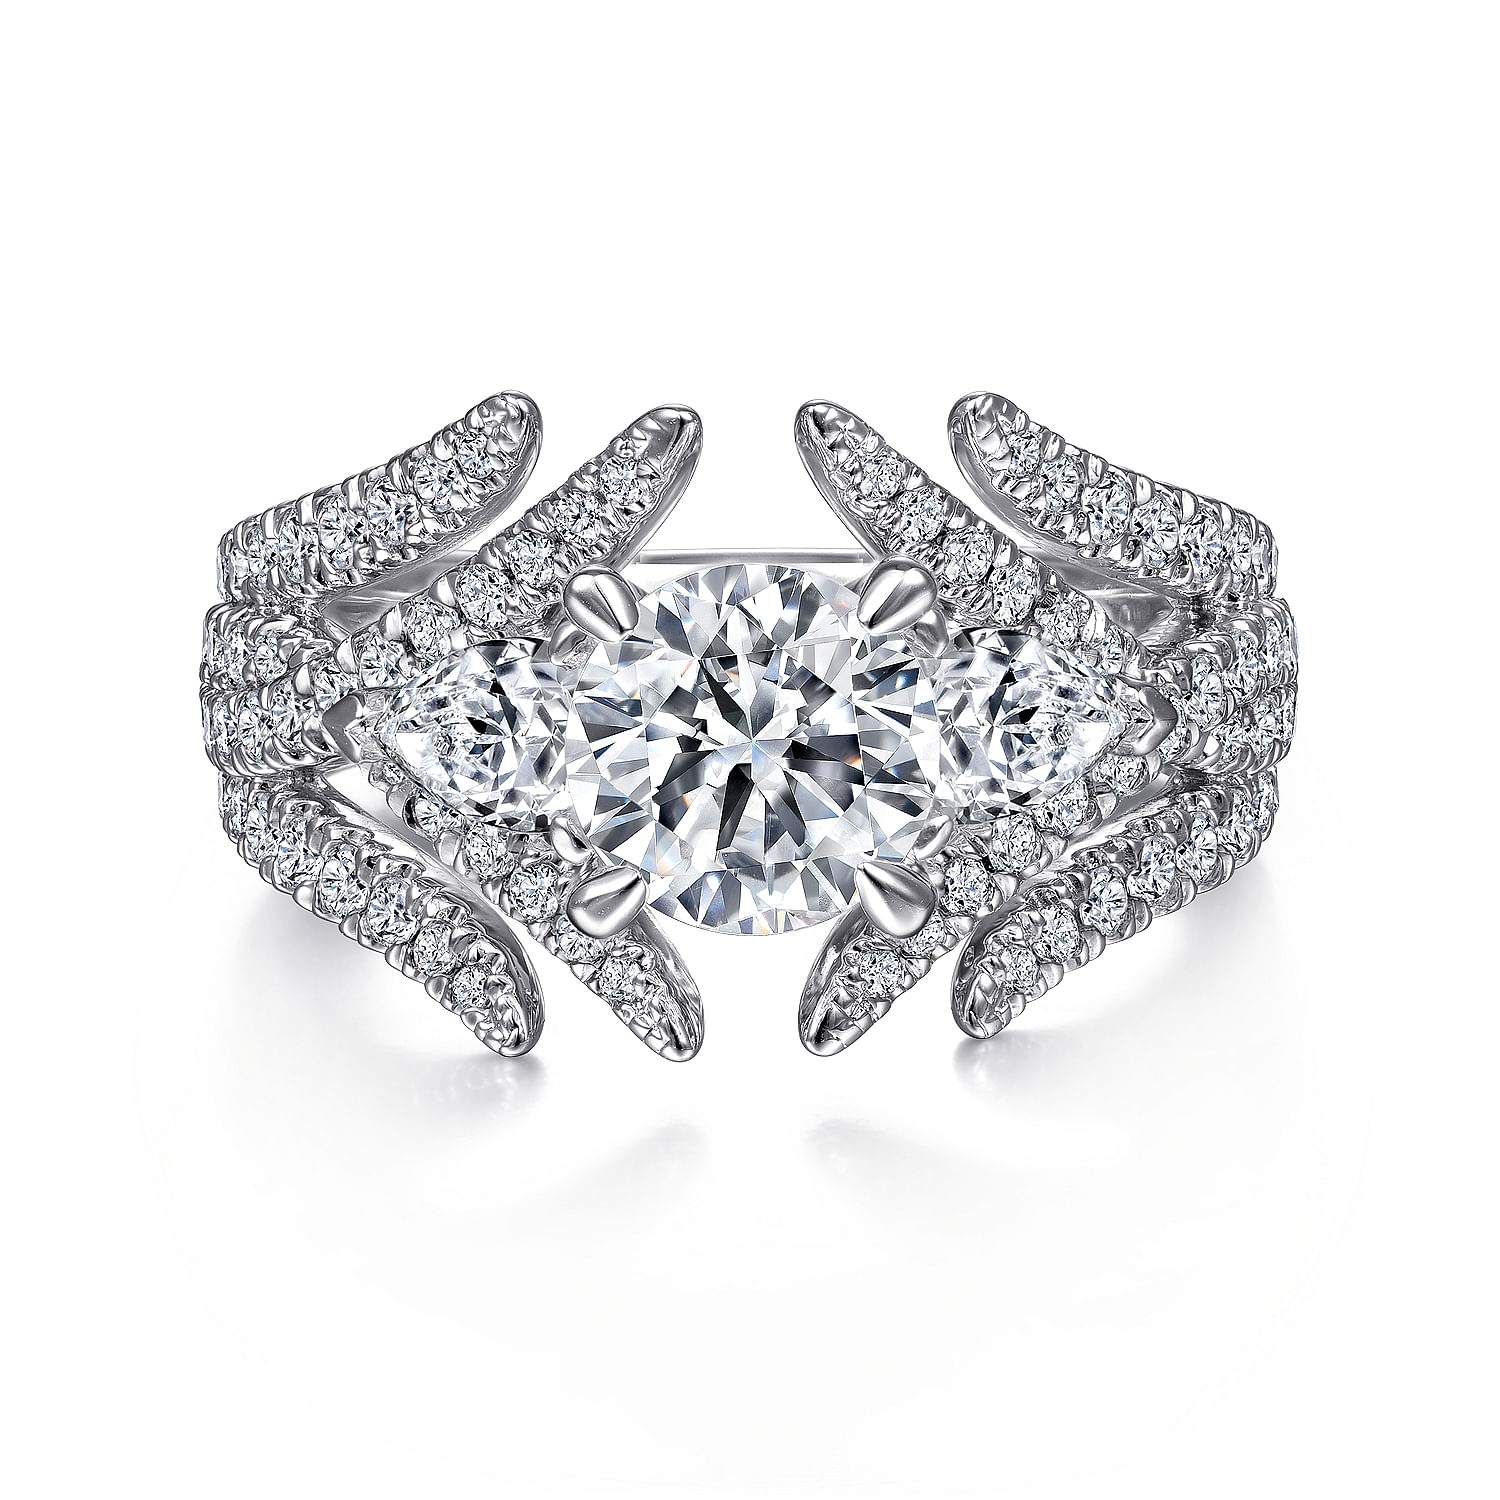 Daya - 14K White Gold Round Three Stone Diamond Engagement Ring